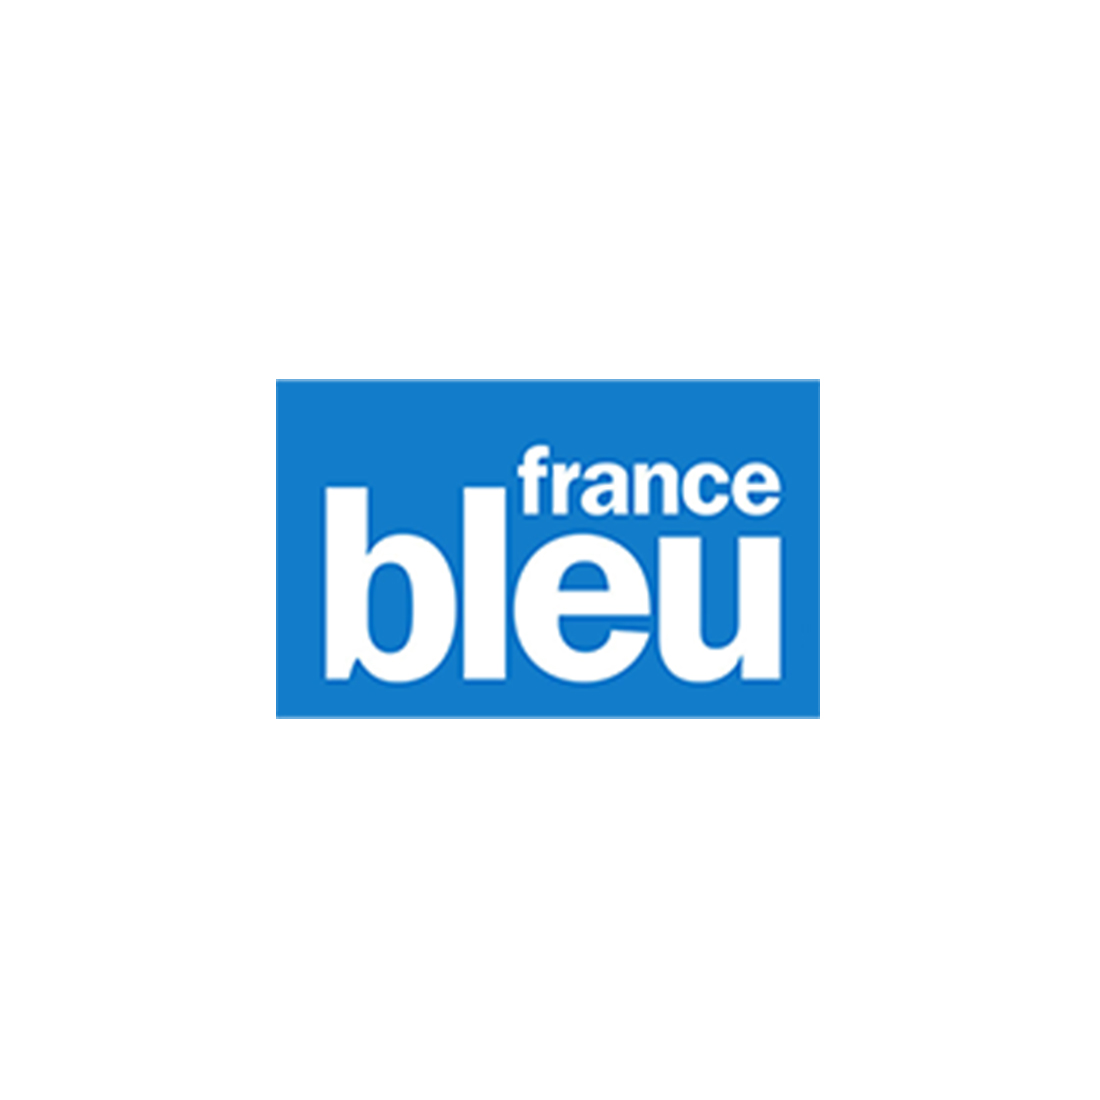 FRANCE BLEU 24.06.2021 | Brenac & Gonzalez et Associés